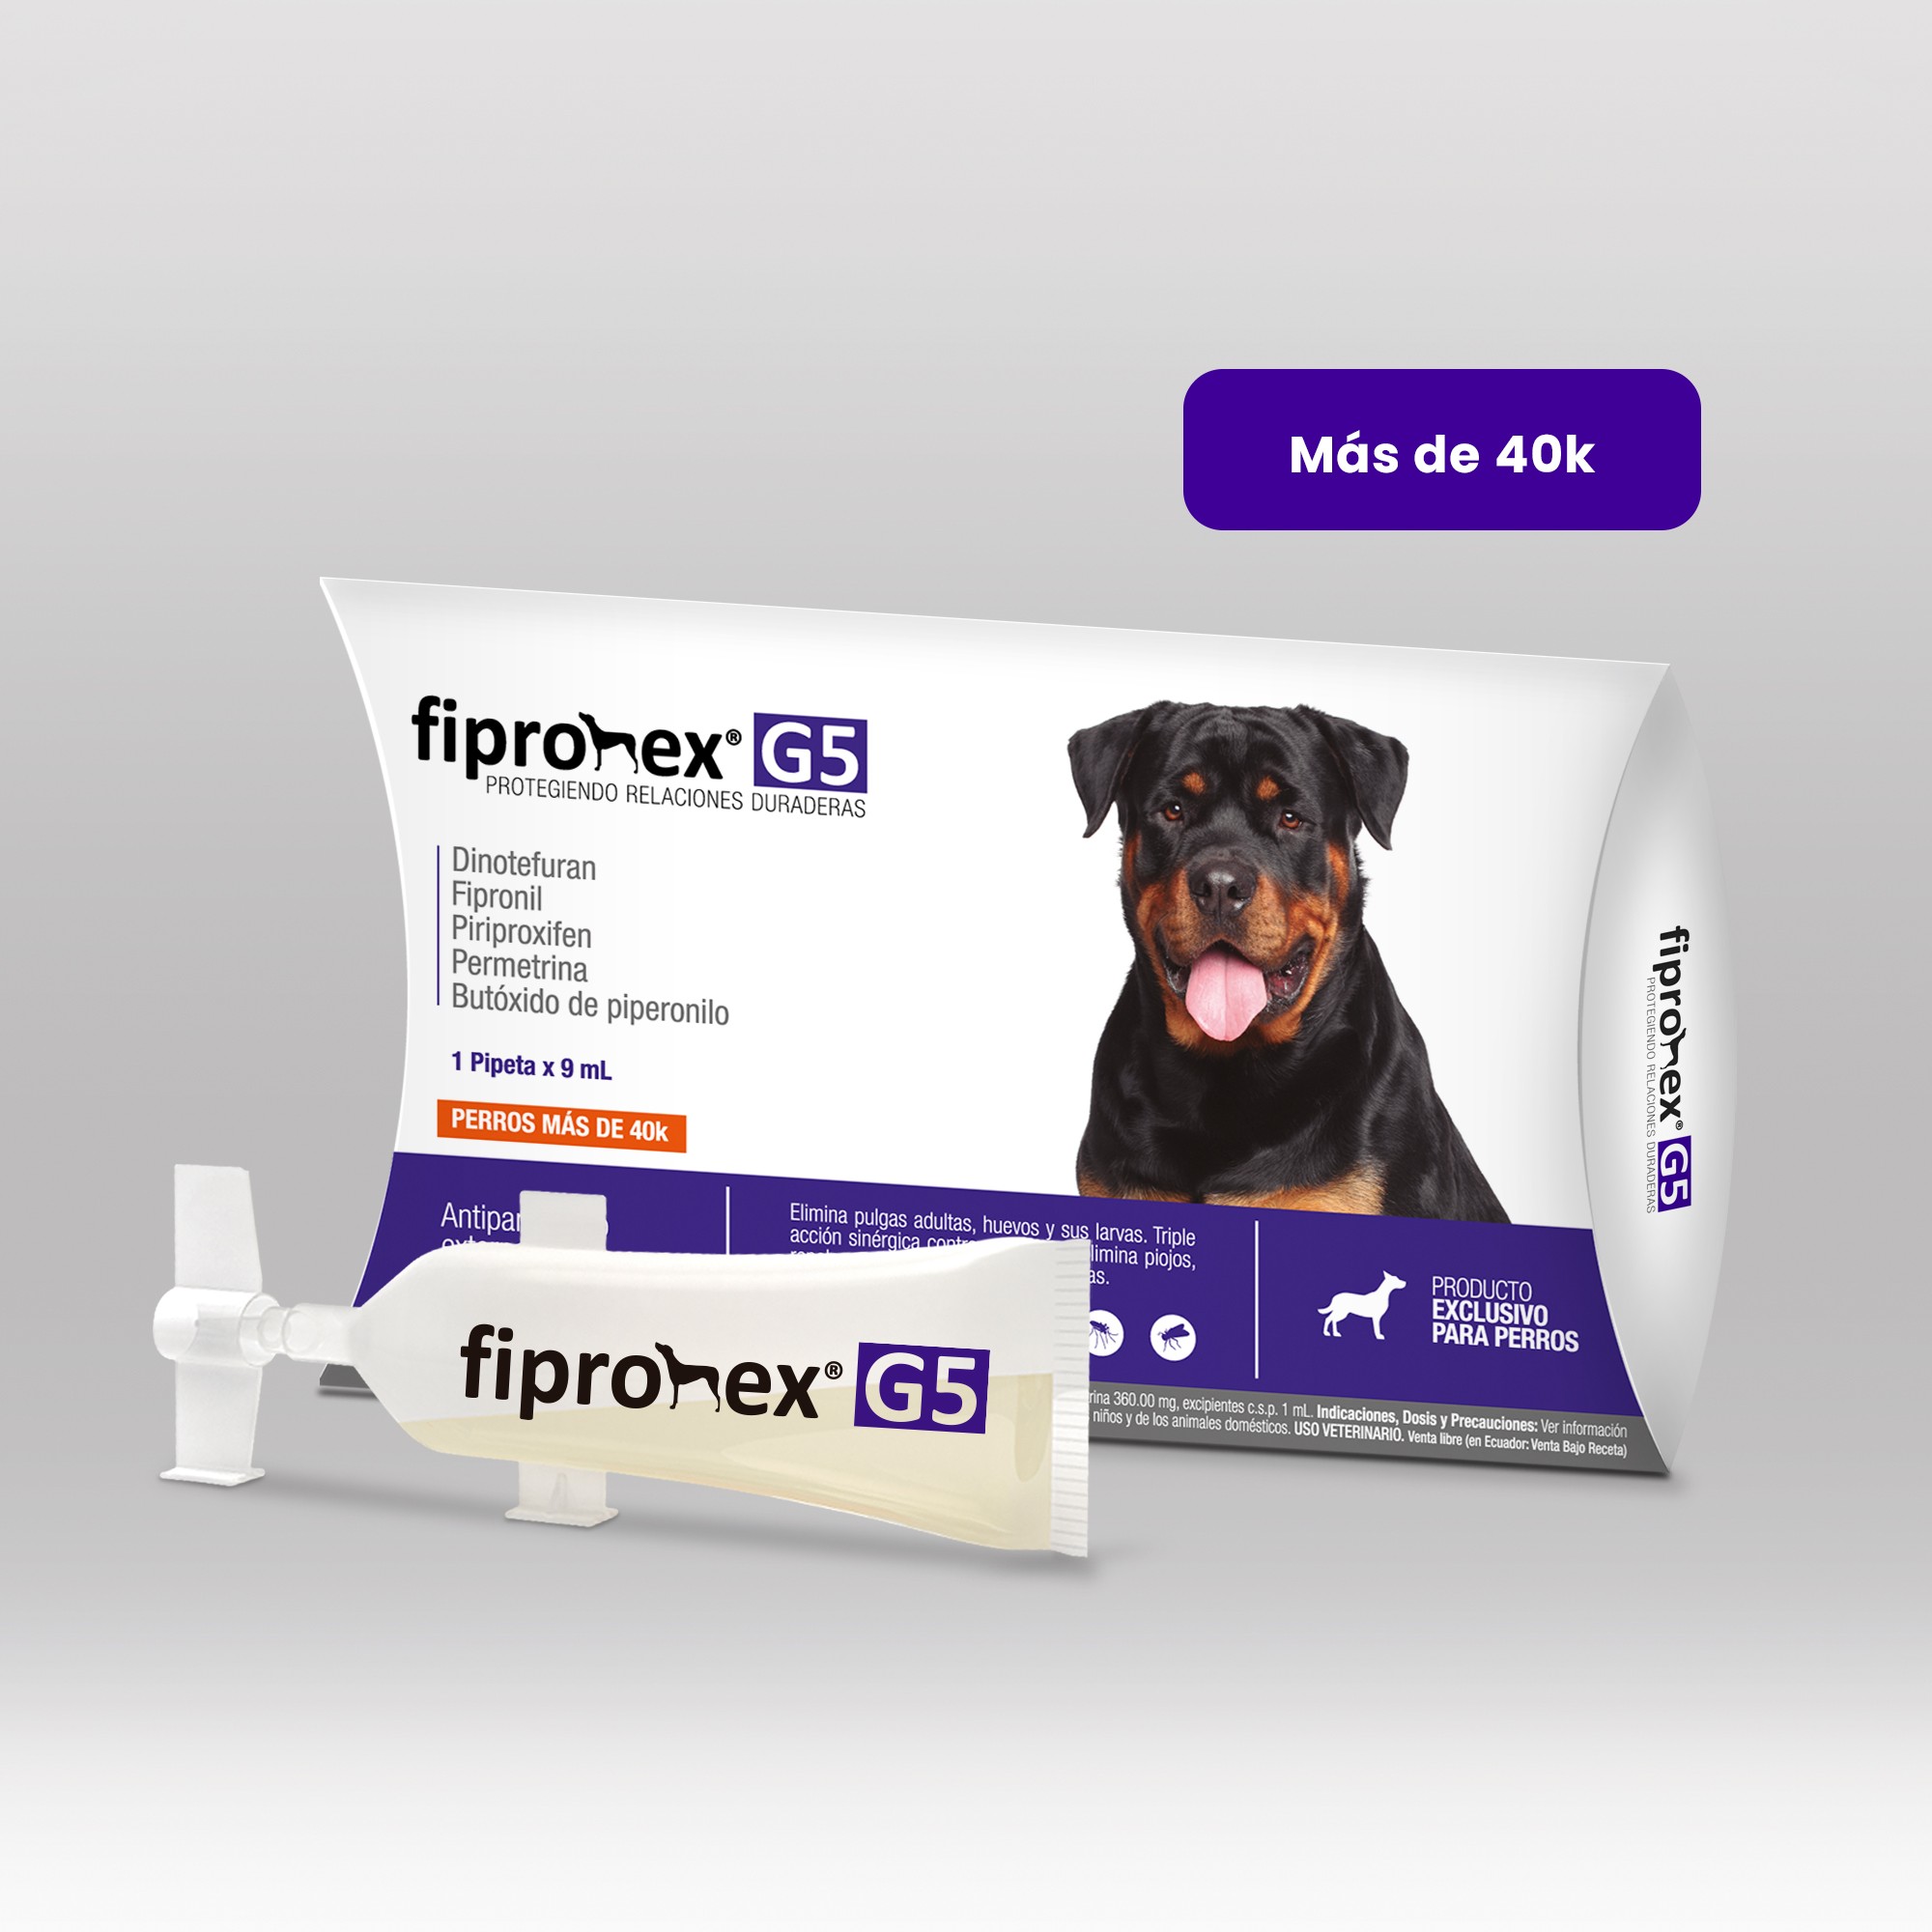 Fipronex® G5 Drop On x 9ml (40 kg a más)